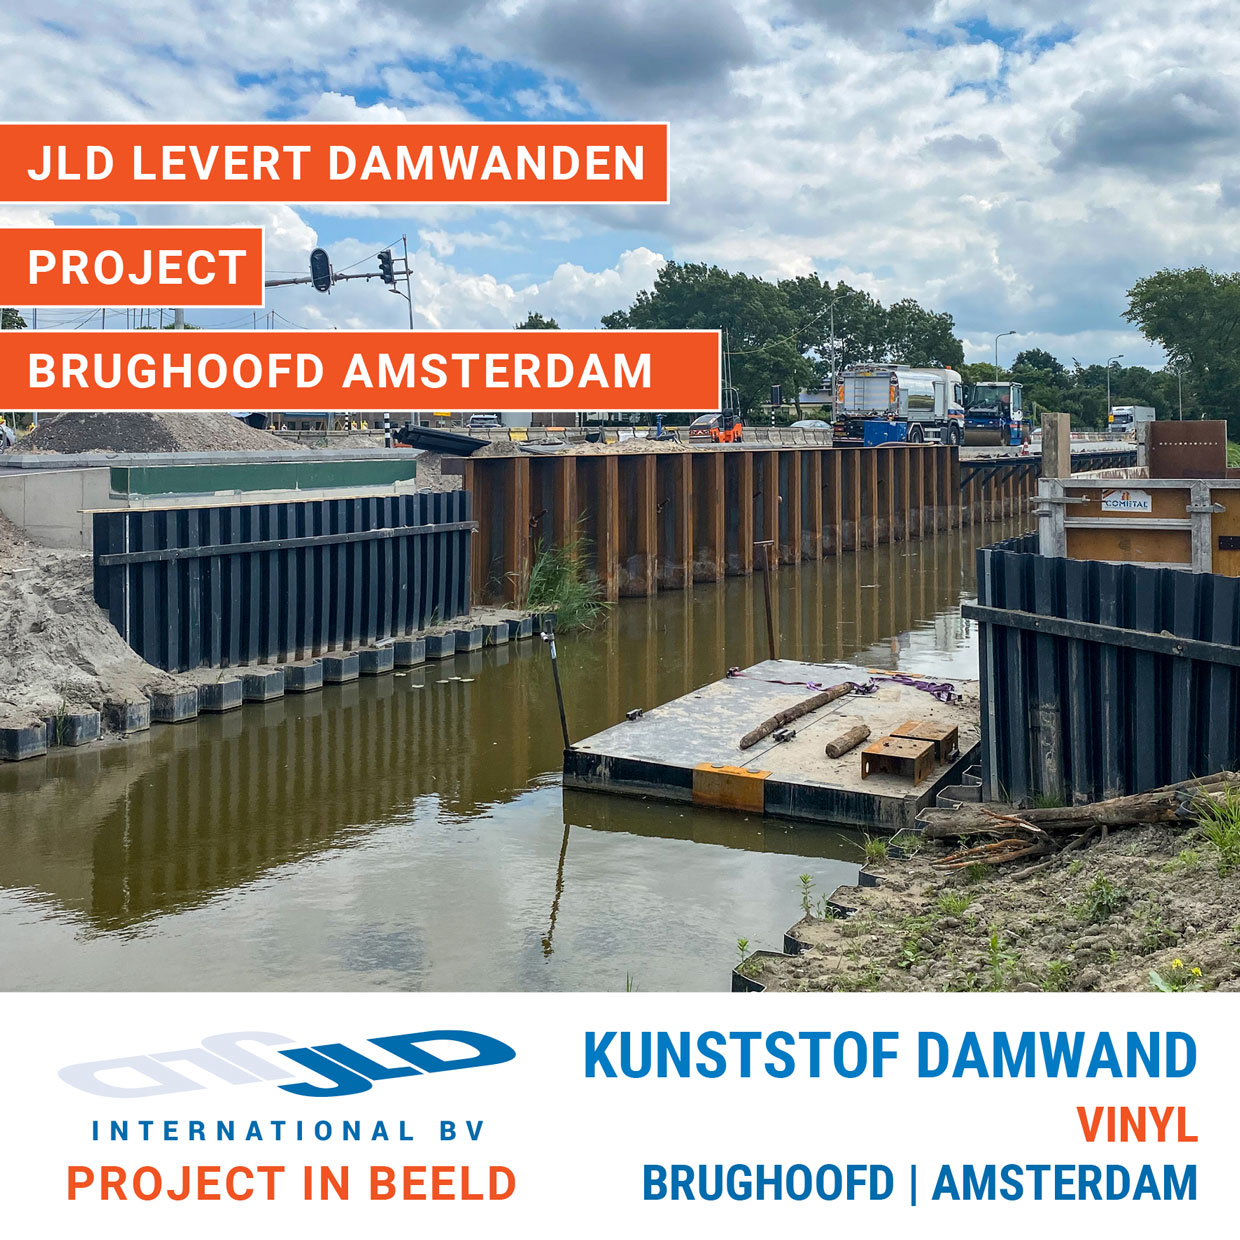 huid Duwen Diplomatie JLD levert kunststof damwanden voor brughoofd Amsterdam - JLD